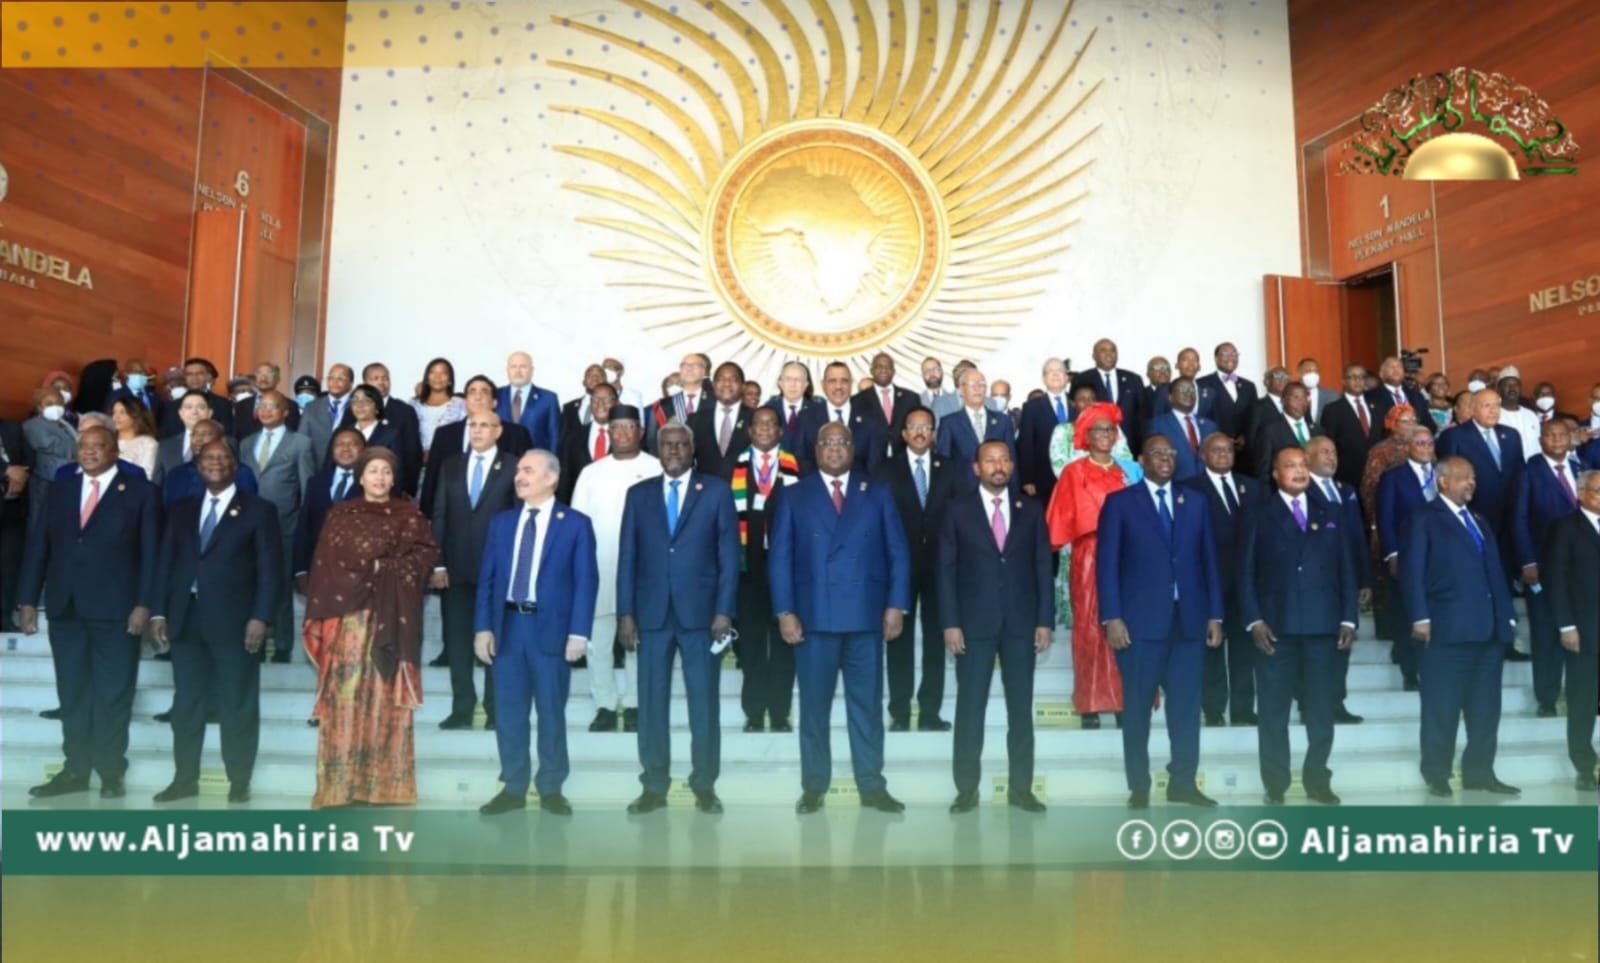 الاتحاد الإفريقي يعتزم عقد مؤتمر جامع للمصالحة الوطنية في ليبيا